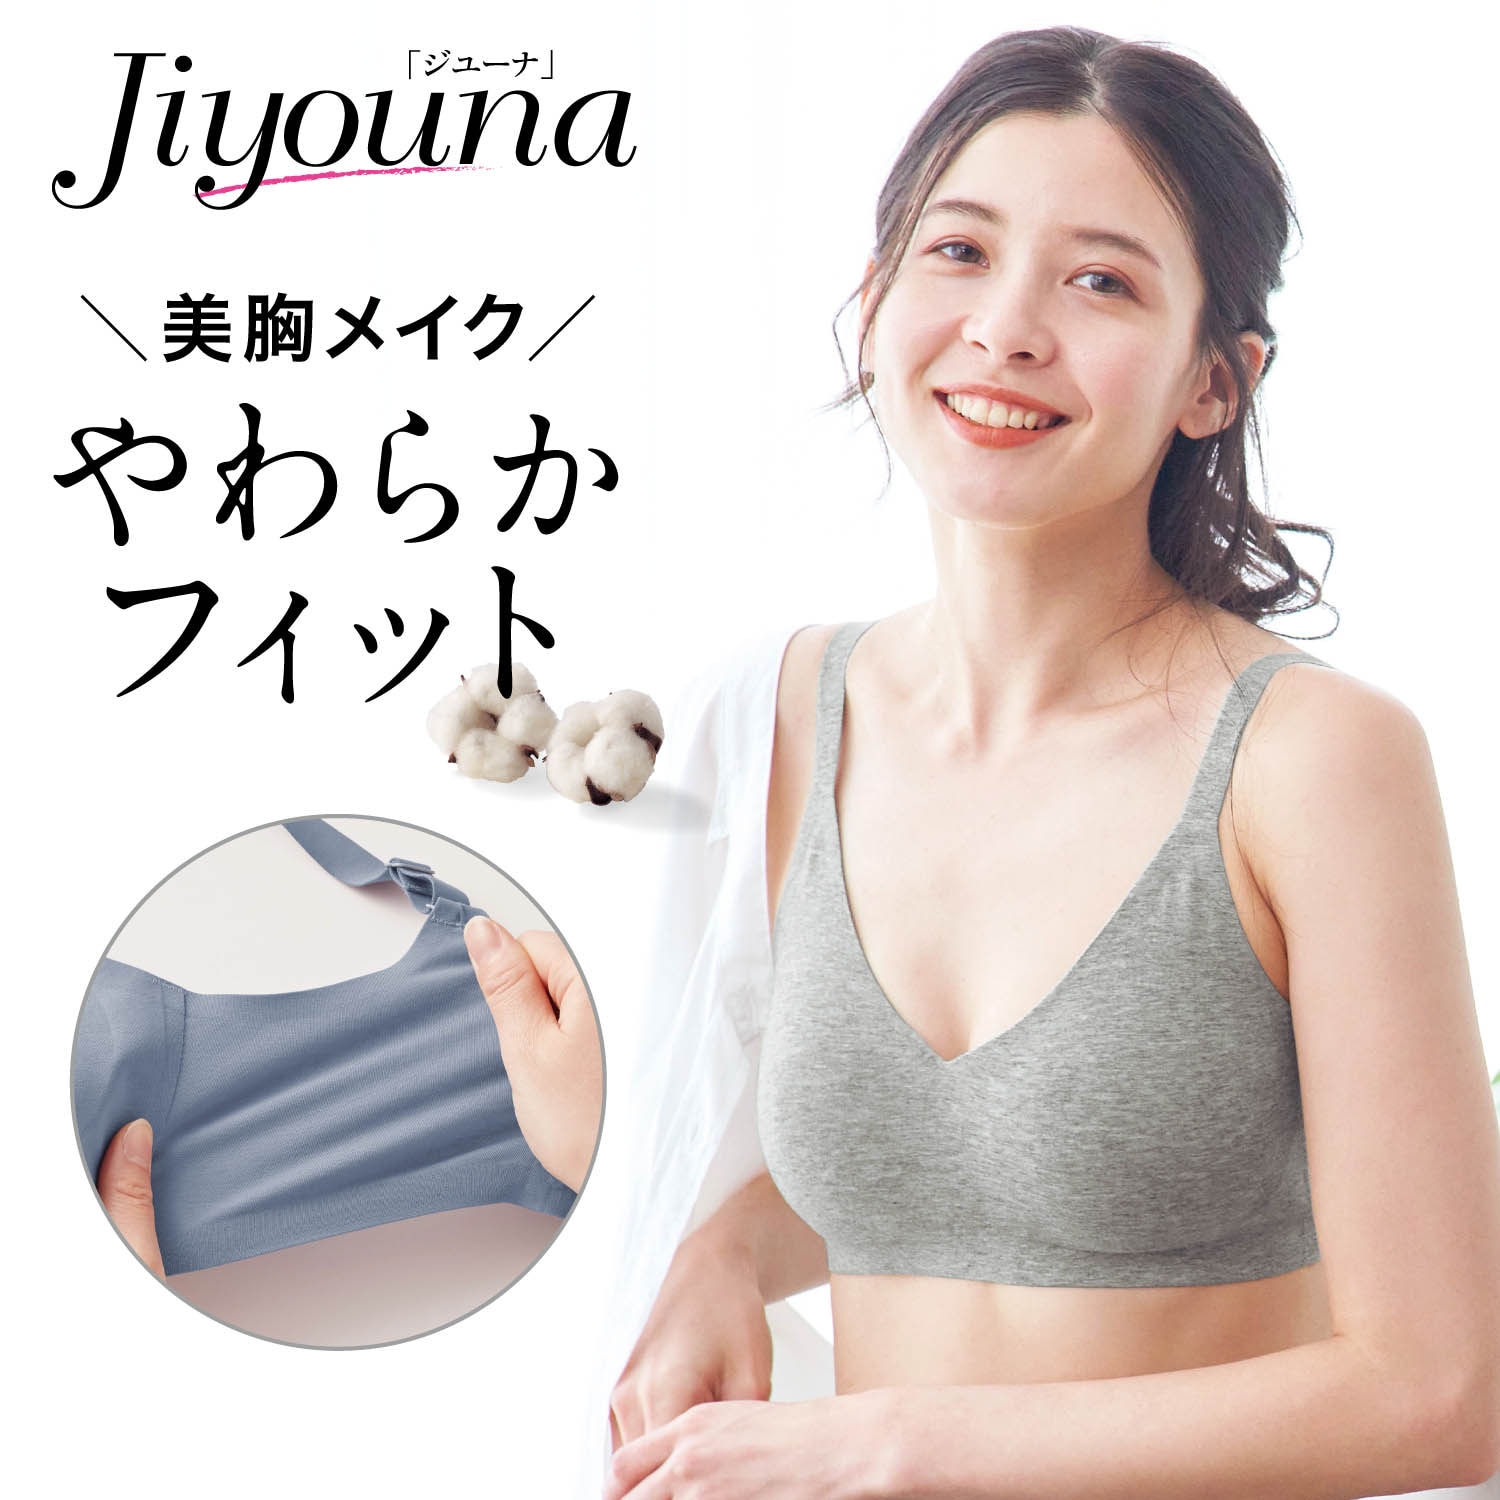 【ジユーナ/Jiyouna】【5月8日までまとめ買いでお得】 ジユーナ・ブラ【ラクちん美胸】